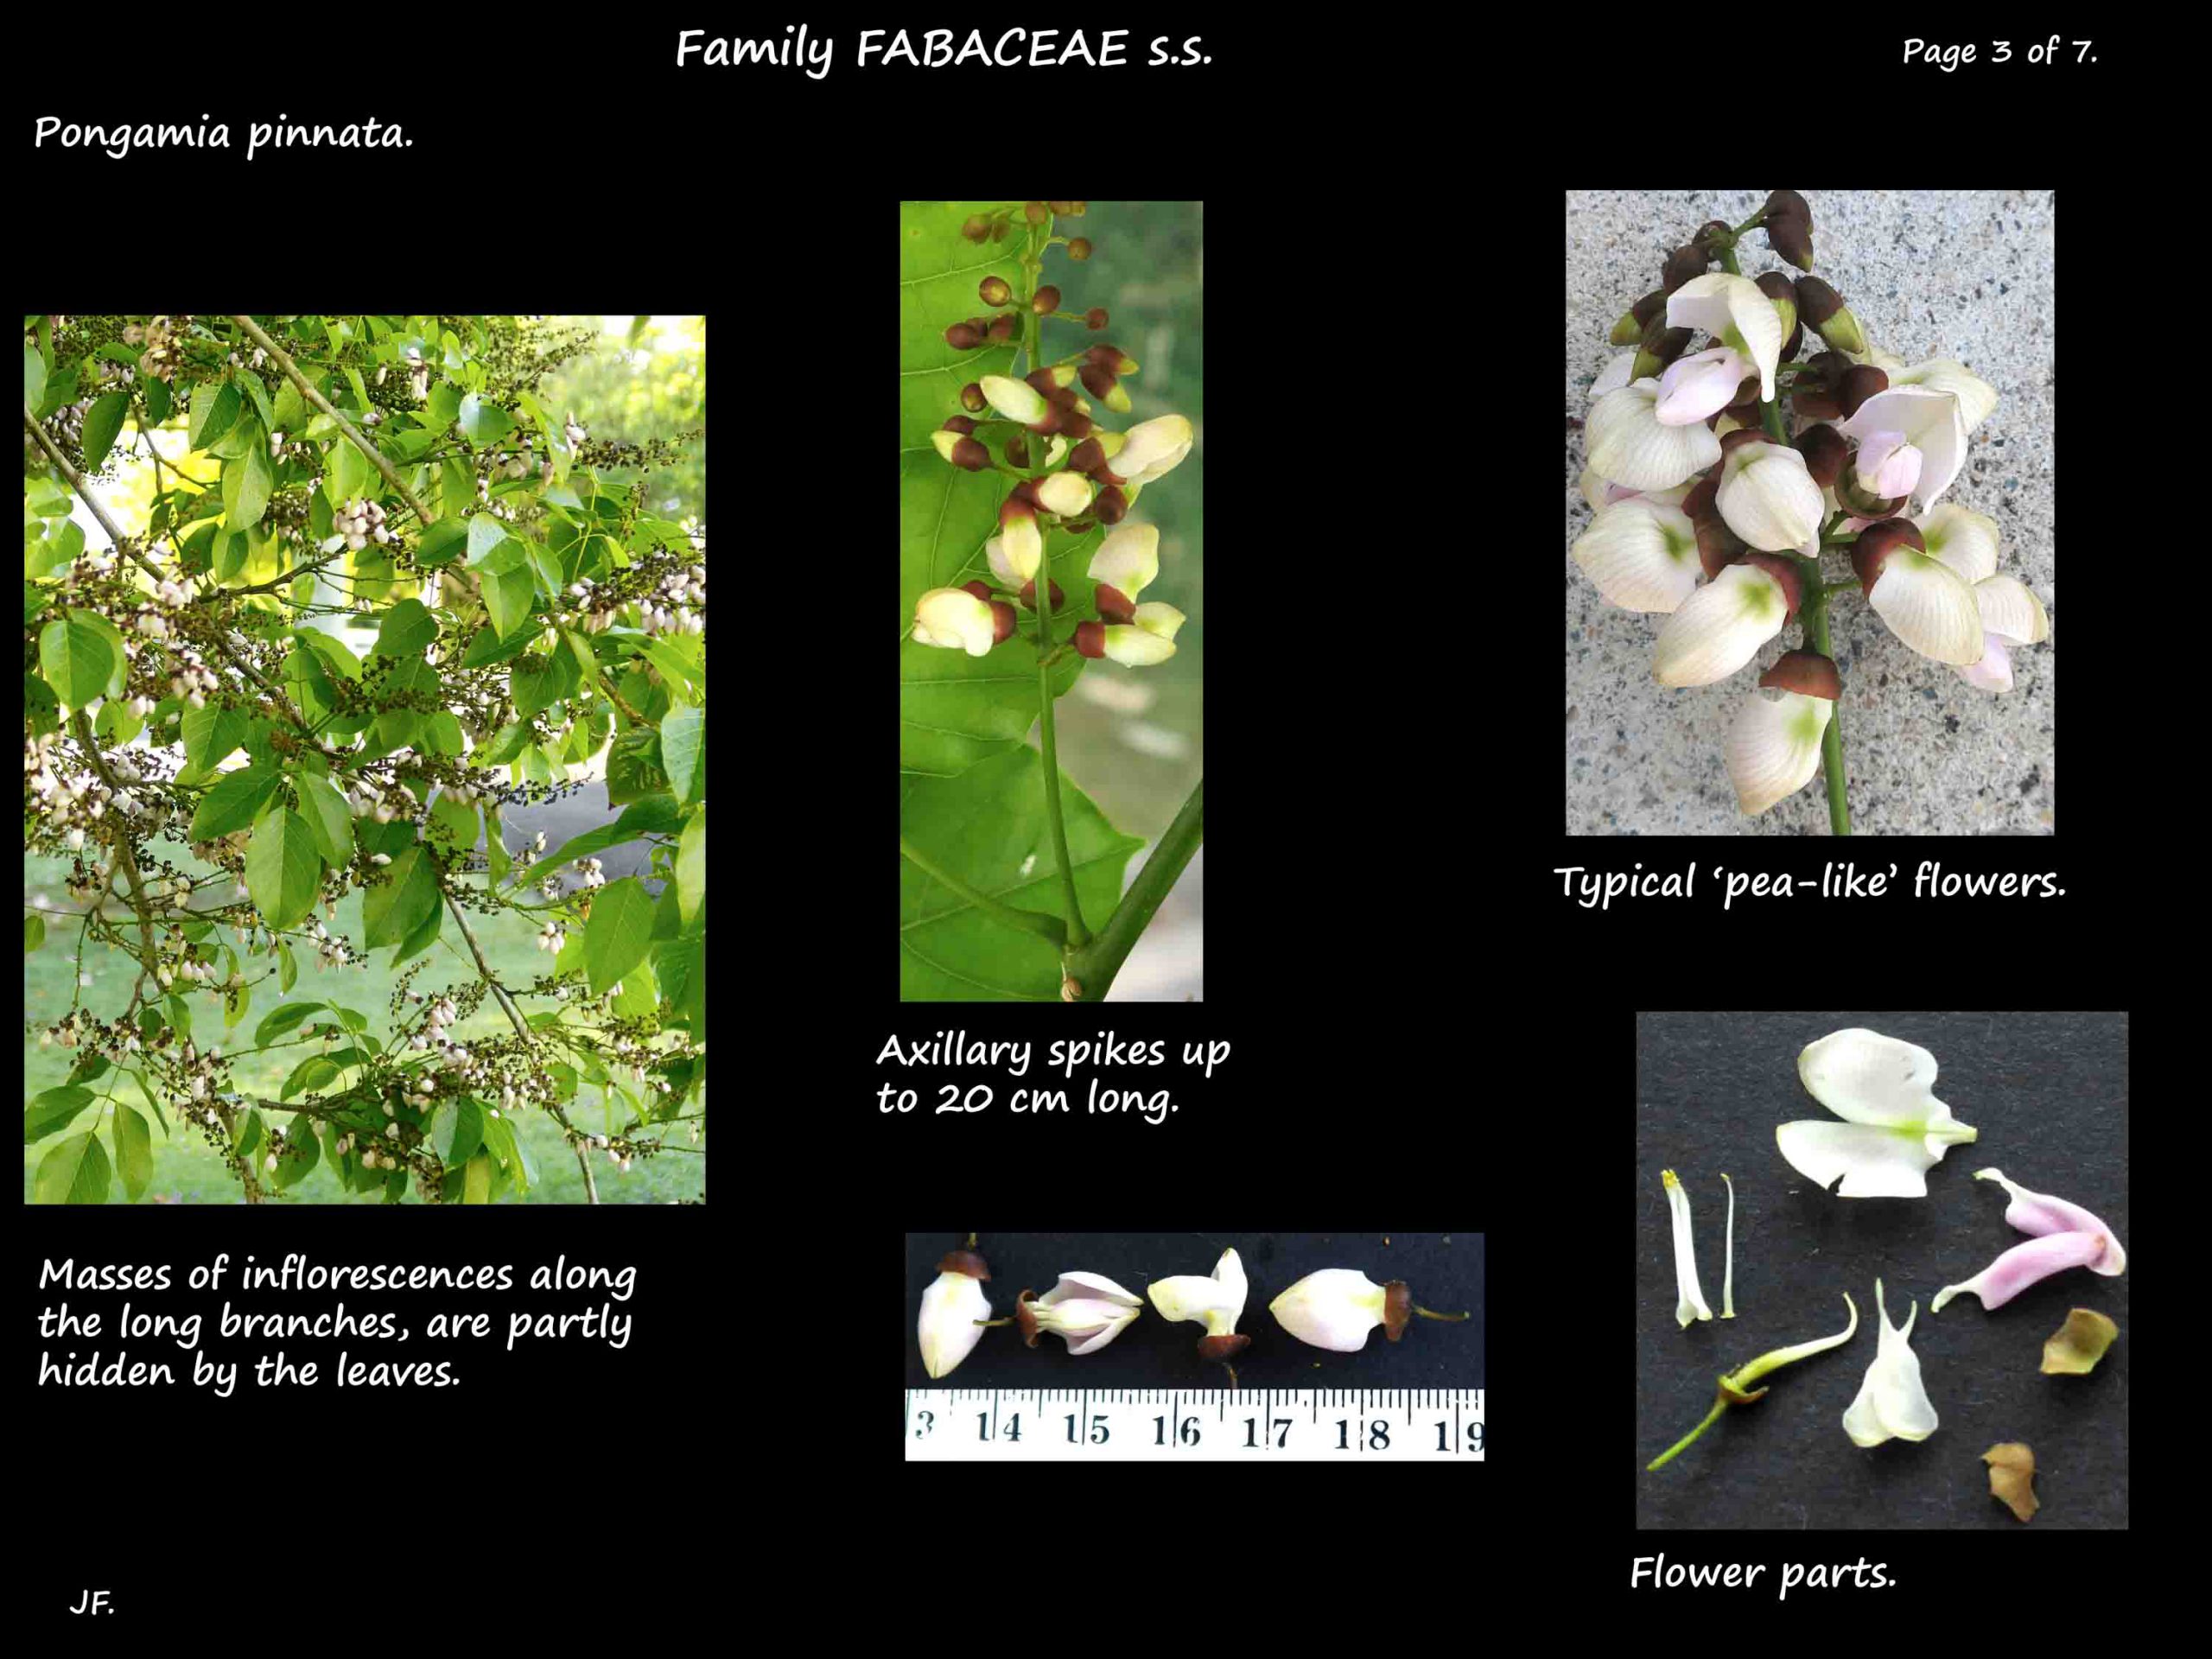 3 Pongamia inflorescences